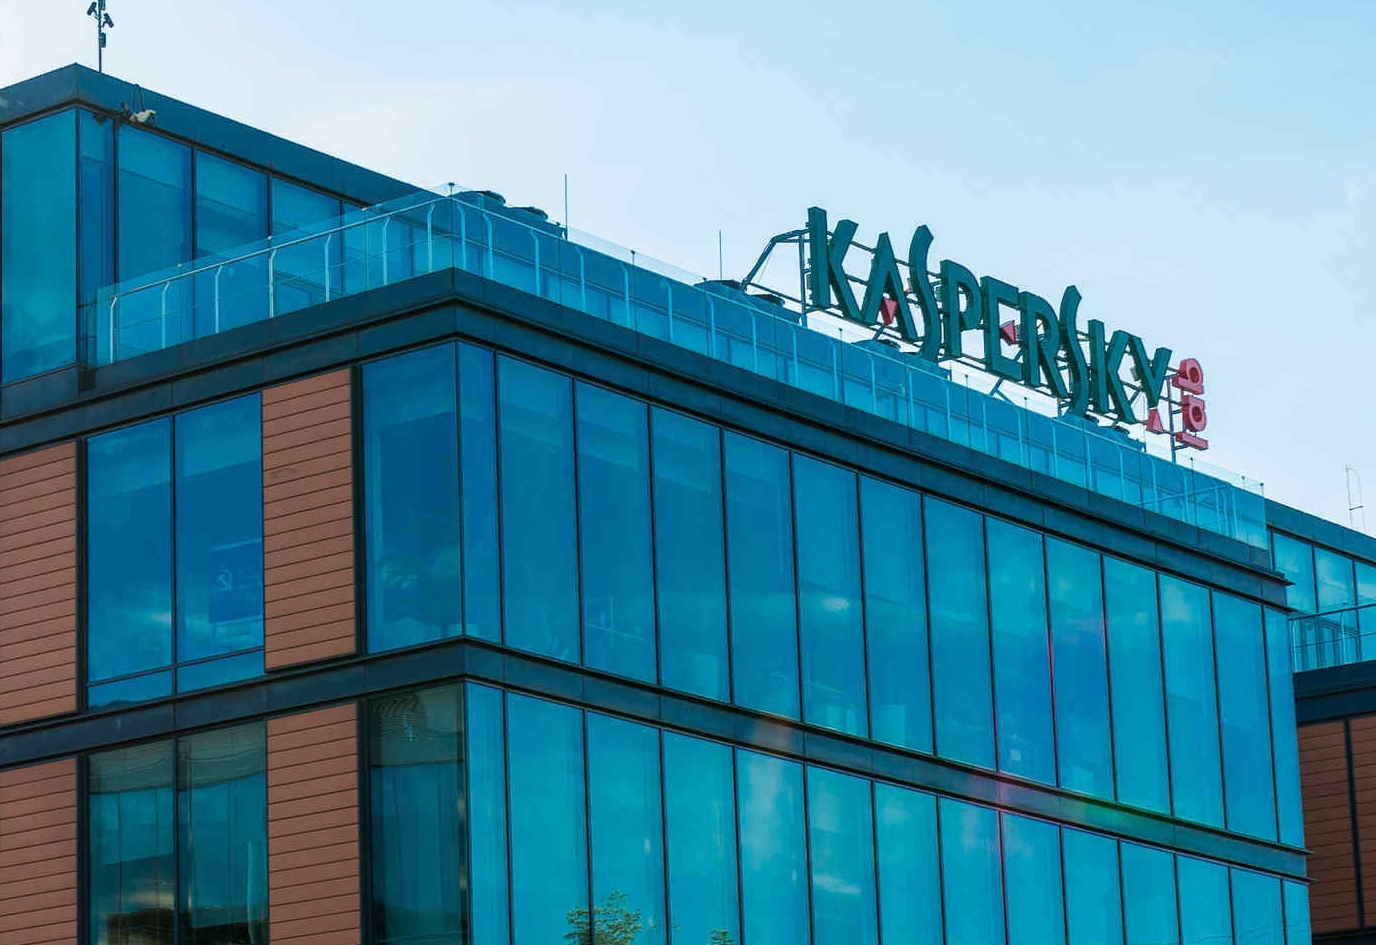 Kaspersky speichert Daten ab Ende 2019 in der Schweiz und eroeffnet Transparenzzentrum - Bild 1